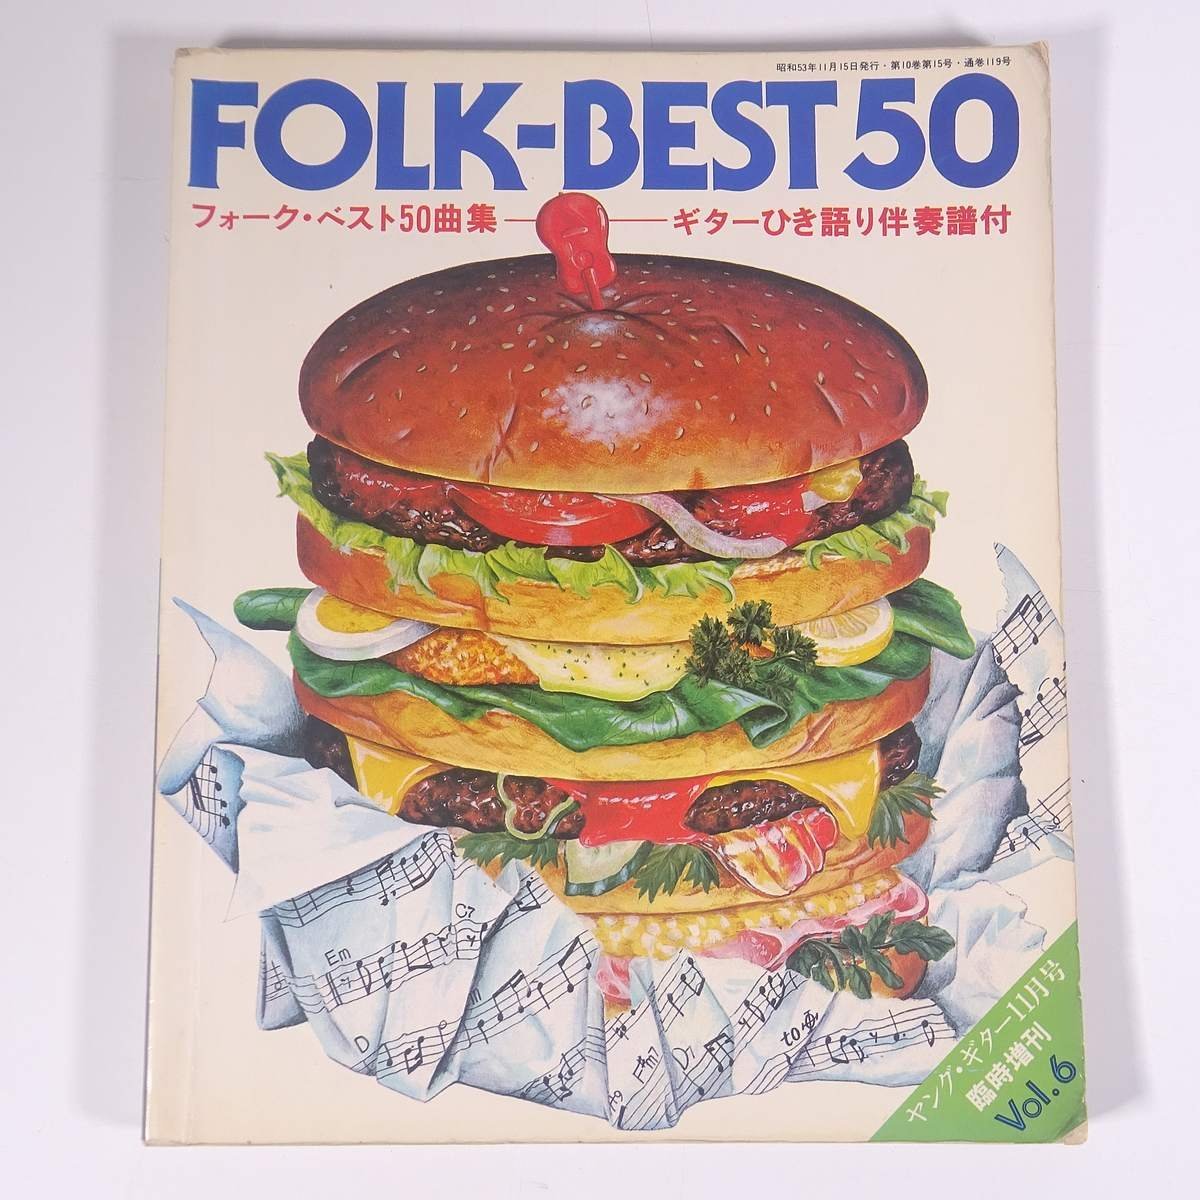 【楽譜】 FOLK-BEST 50 フォーク・ベスト50曲集 Vol.6 ヤング・ギター臨時増刊 シンコー 新興楽譜出版社 1978 大型本 音楽 邦楽 ギター_画像1